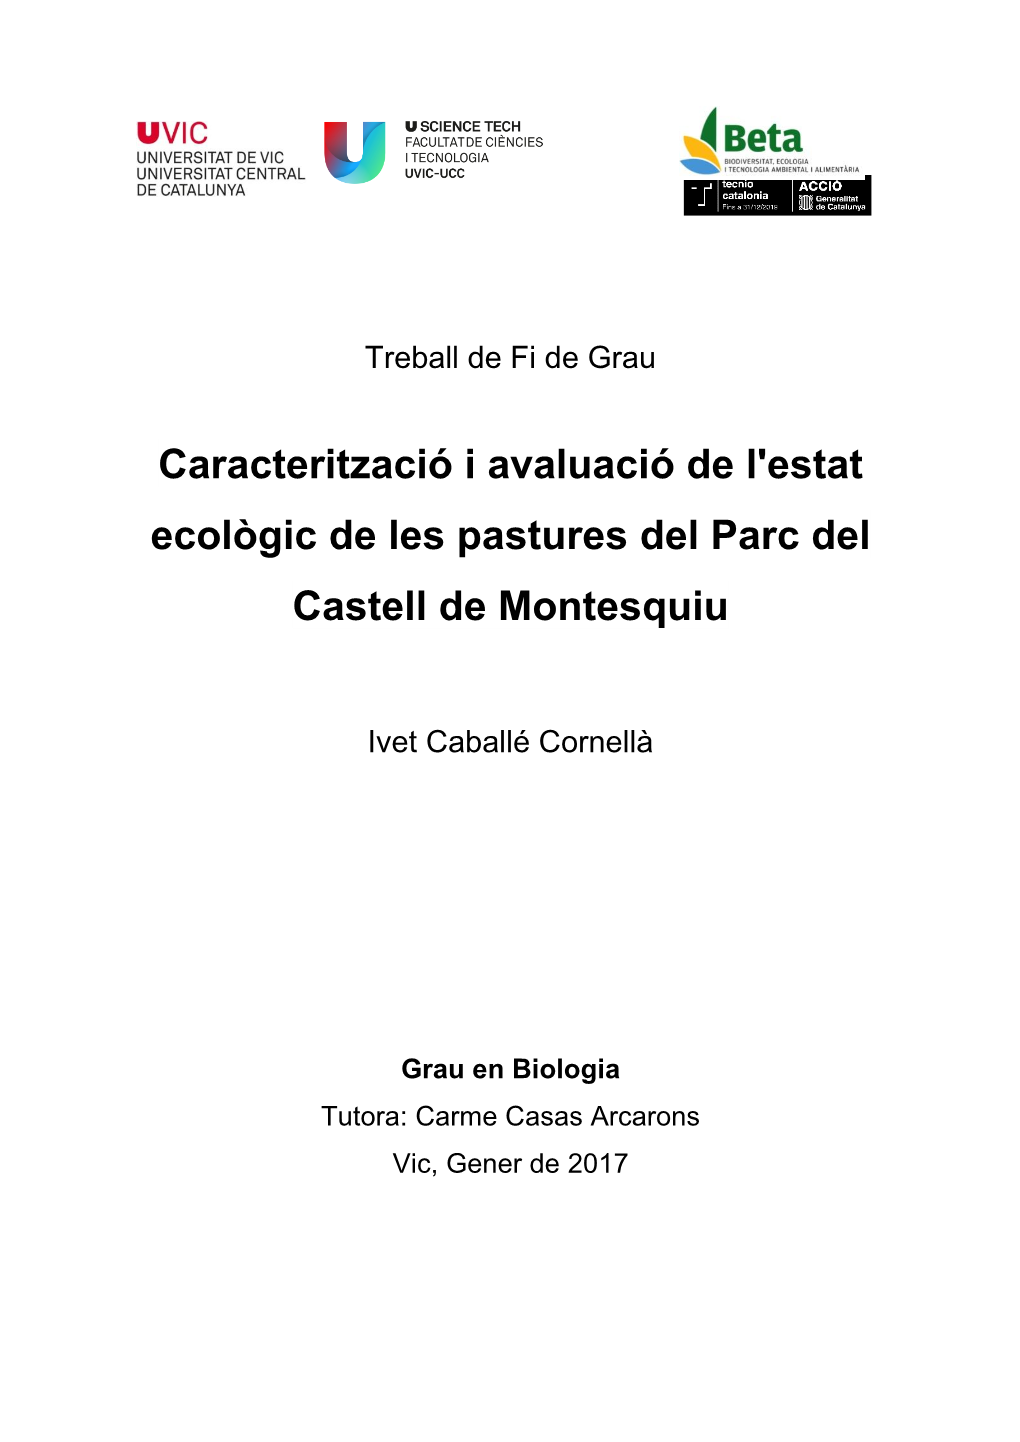 Caracterització I Avaluació De L'estat Ecològic De Les Pastures Del Parc Del Castell De Montesquiu